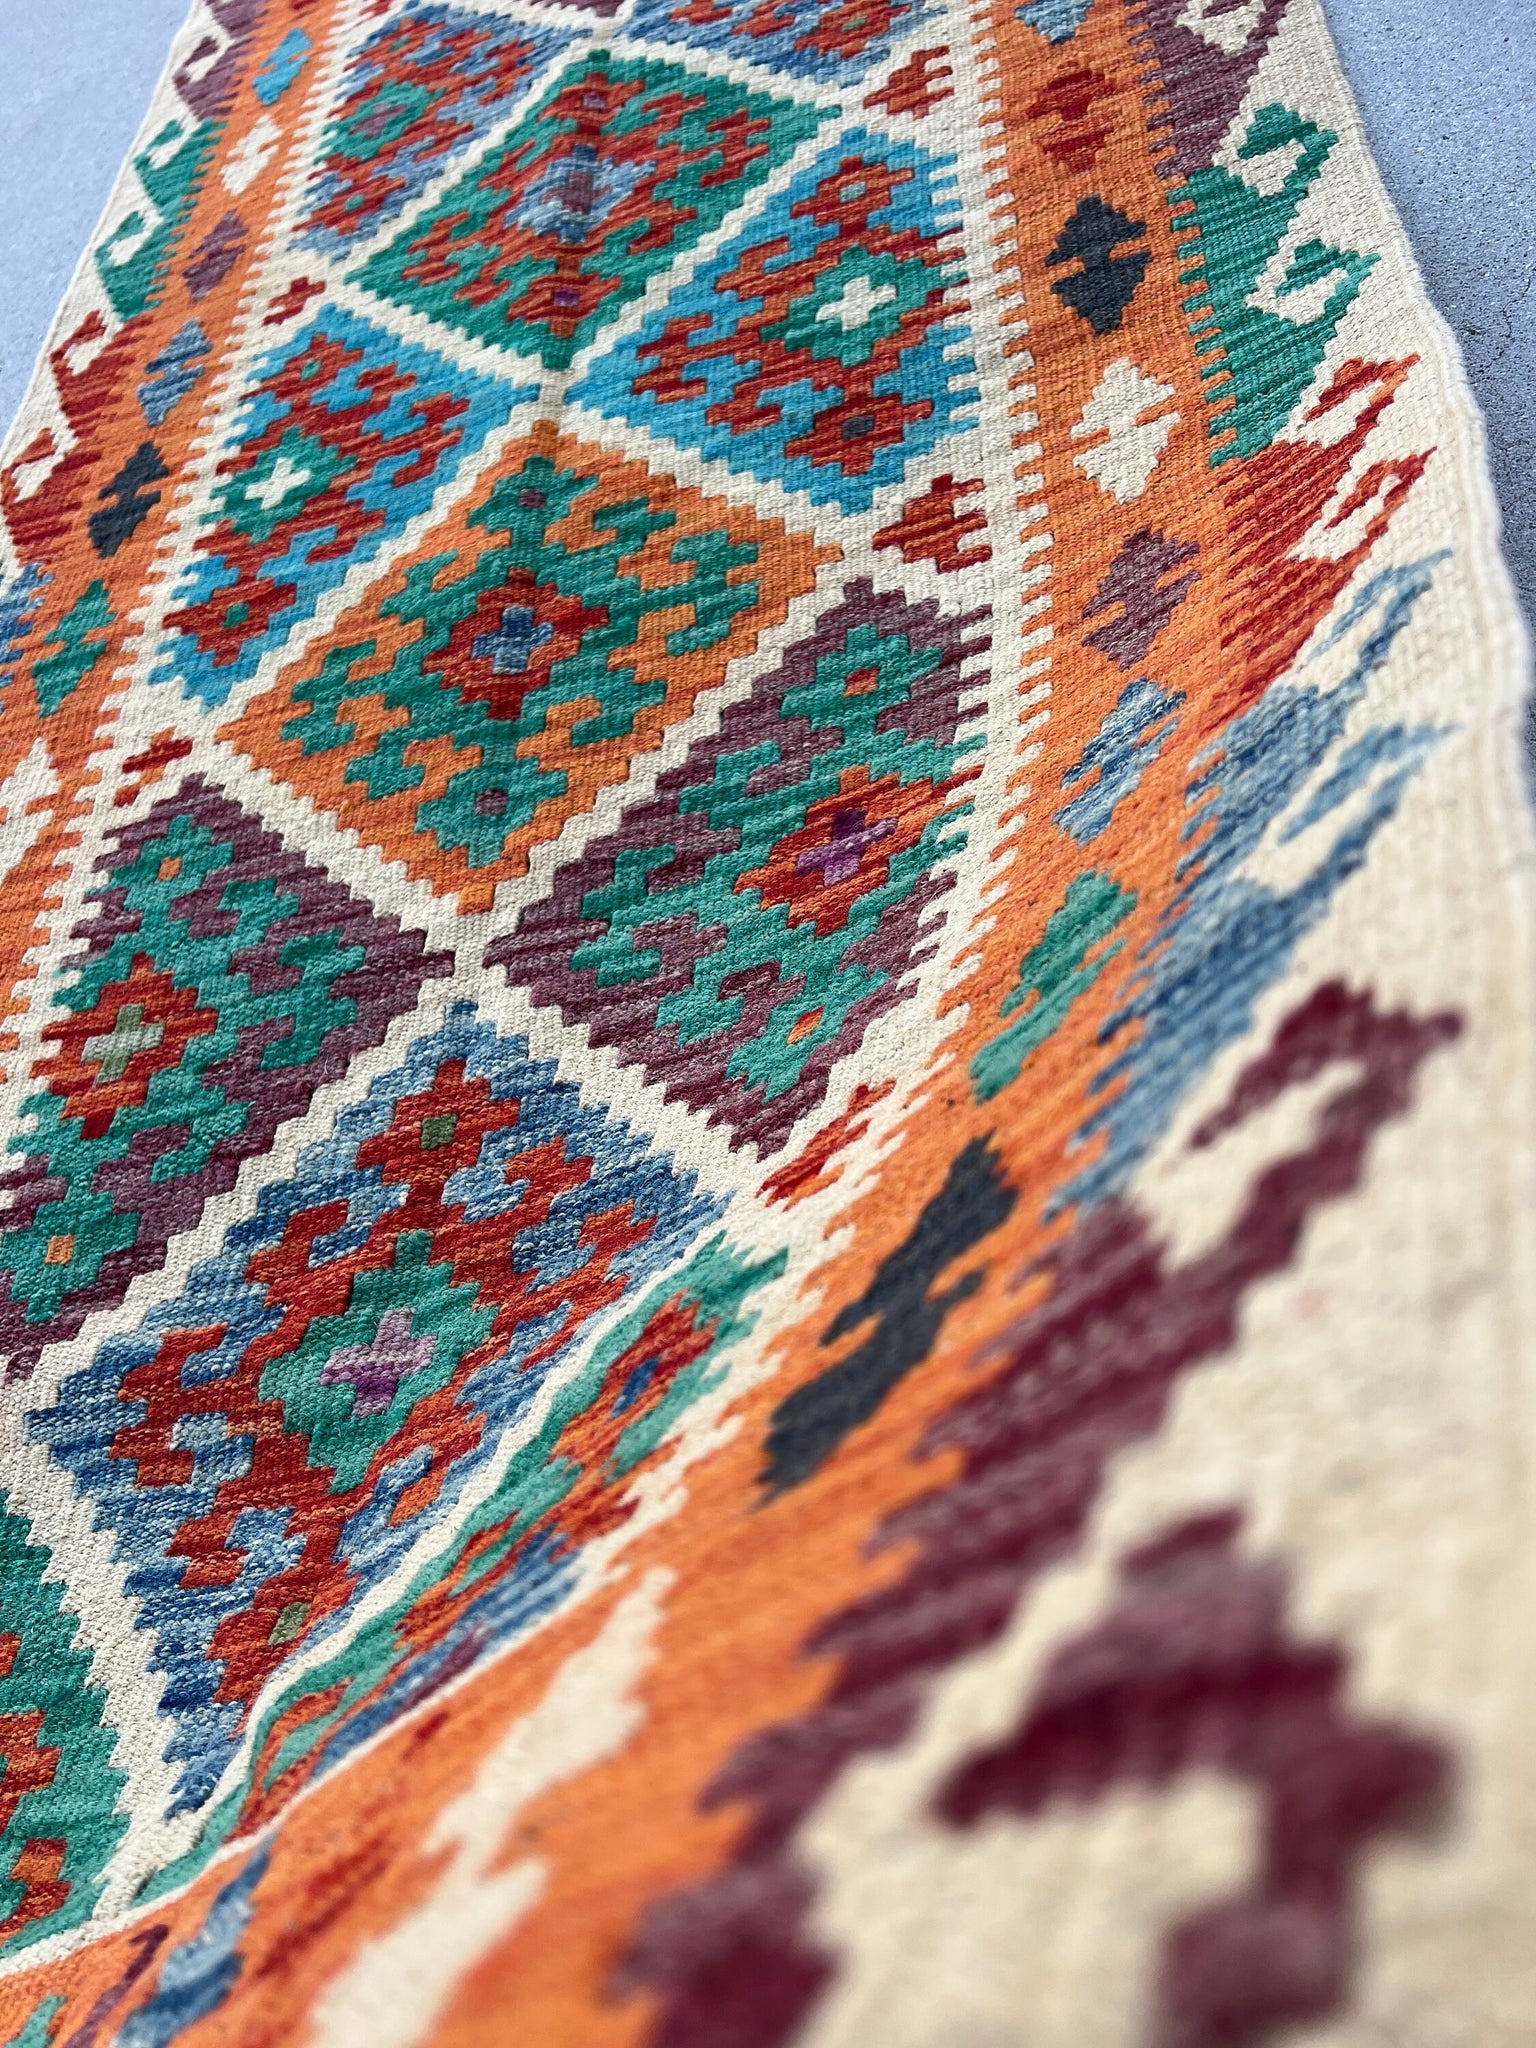 2x7 Handmade Afghan Kilim Runner Rug | Beige Cream Burnt Orange Denim Blue Wine Red Teal Green Black | Flatweave Persian Wool Tribal Outdoor